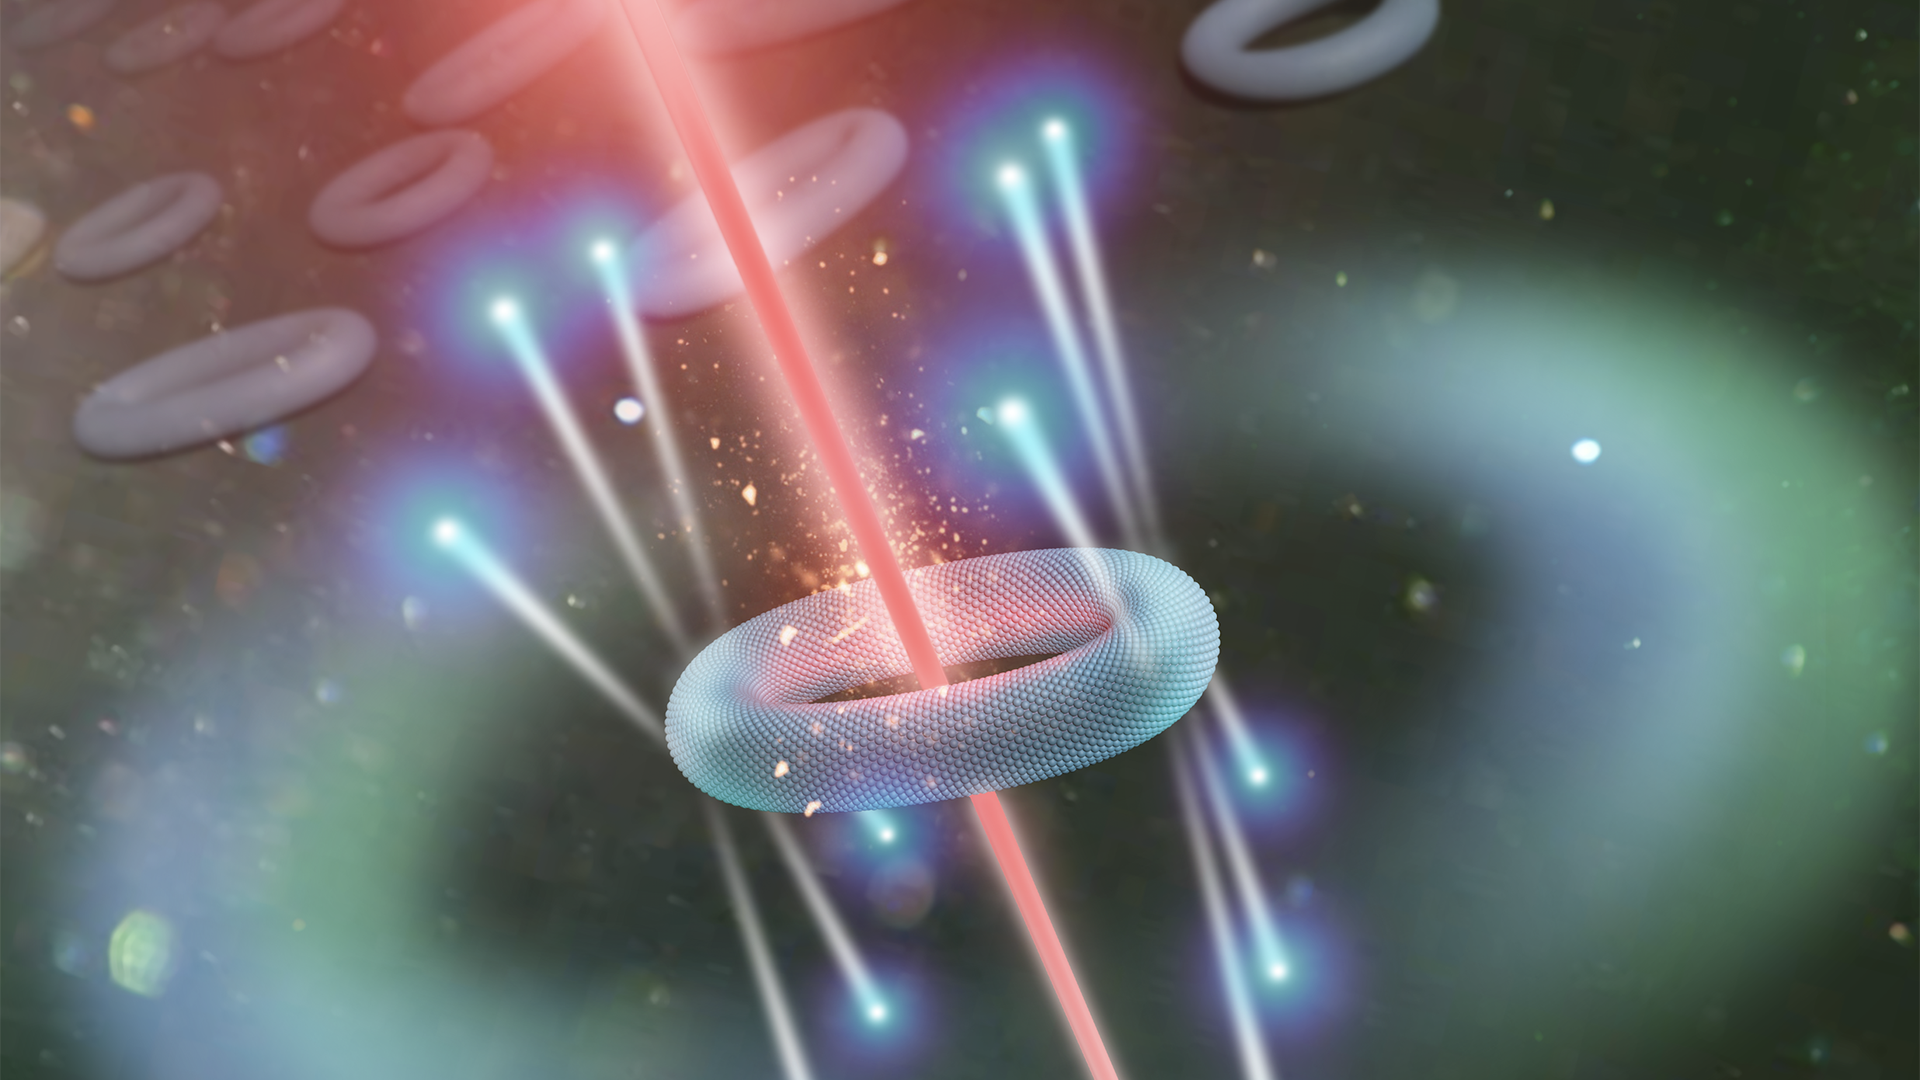 photon qubit entanglement and transduction